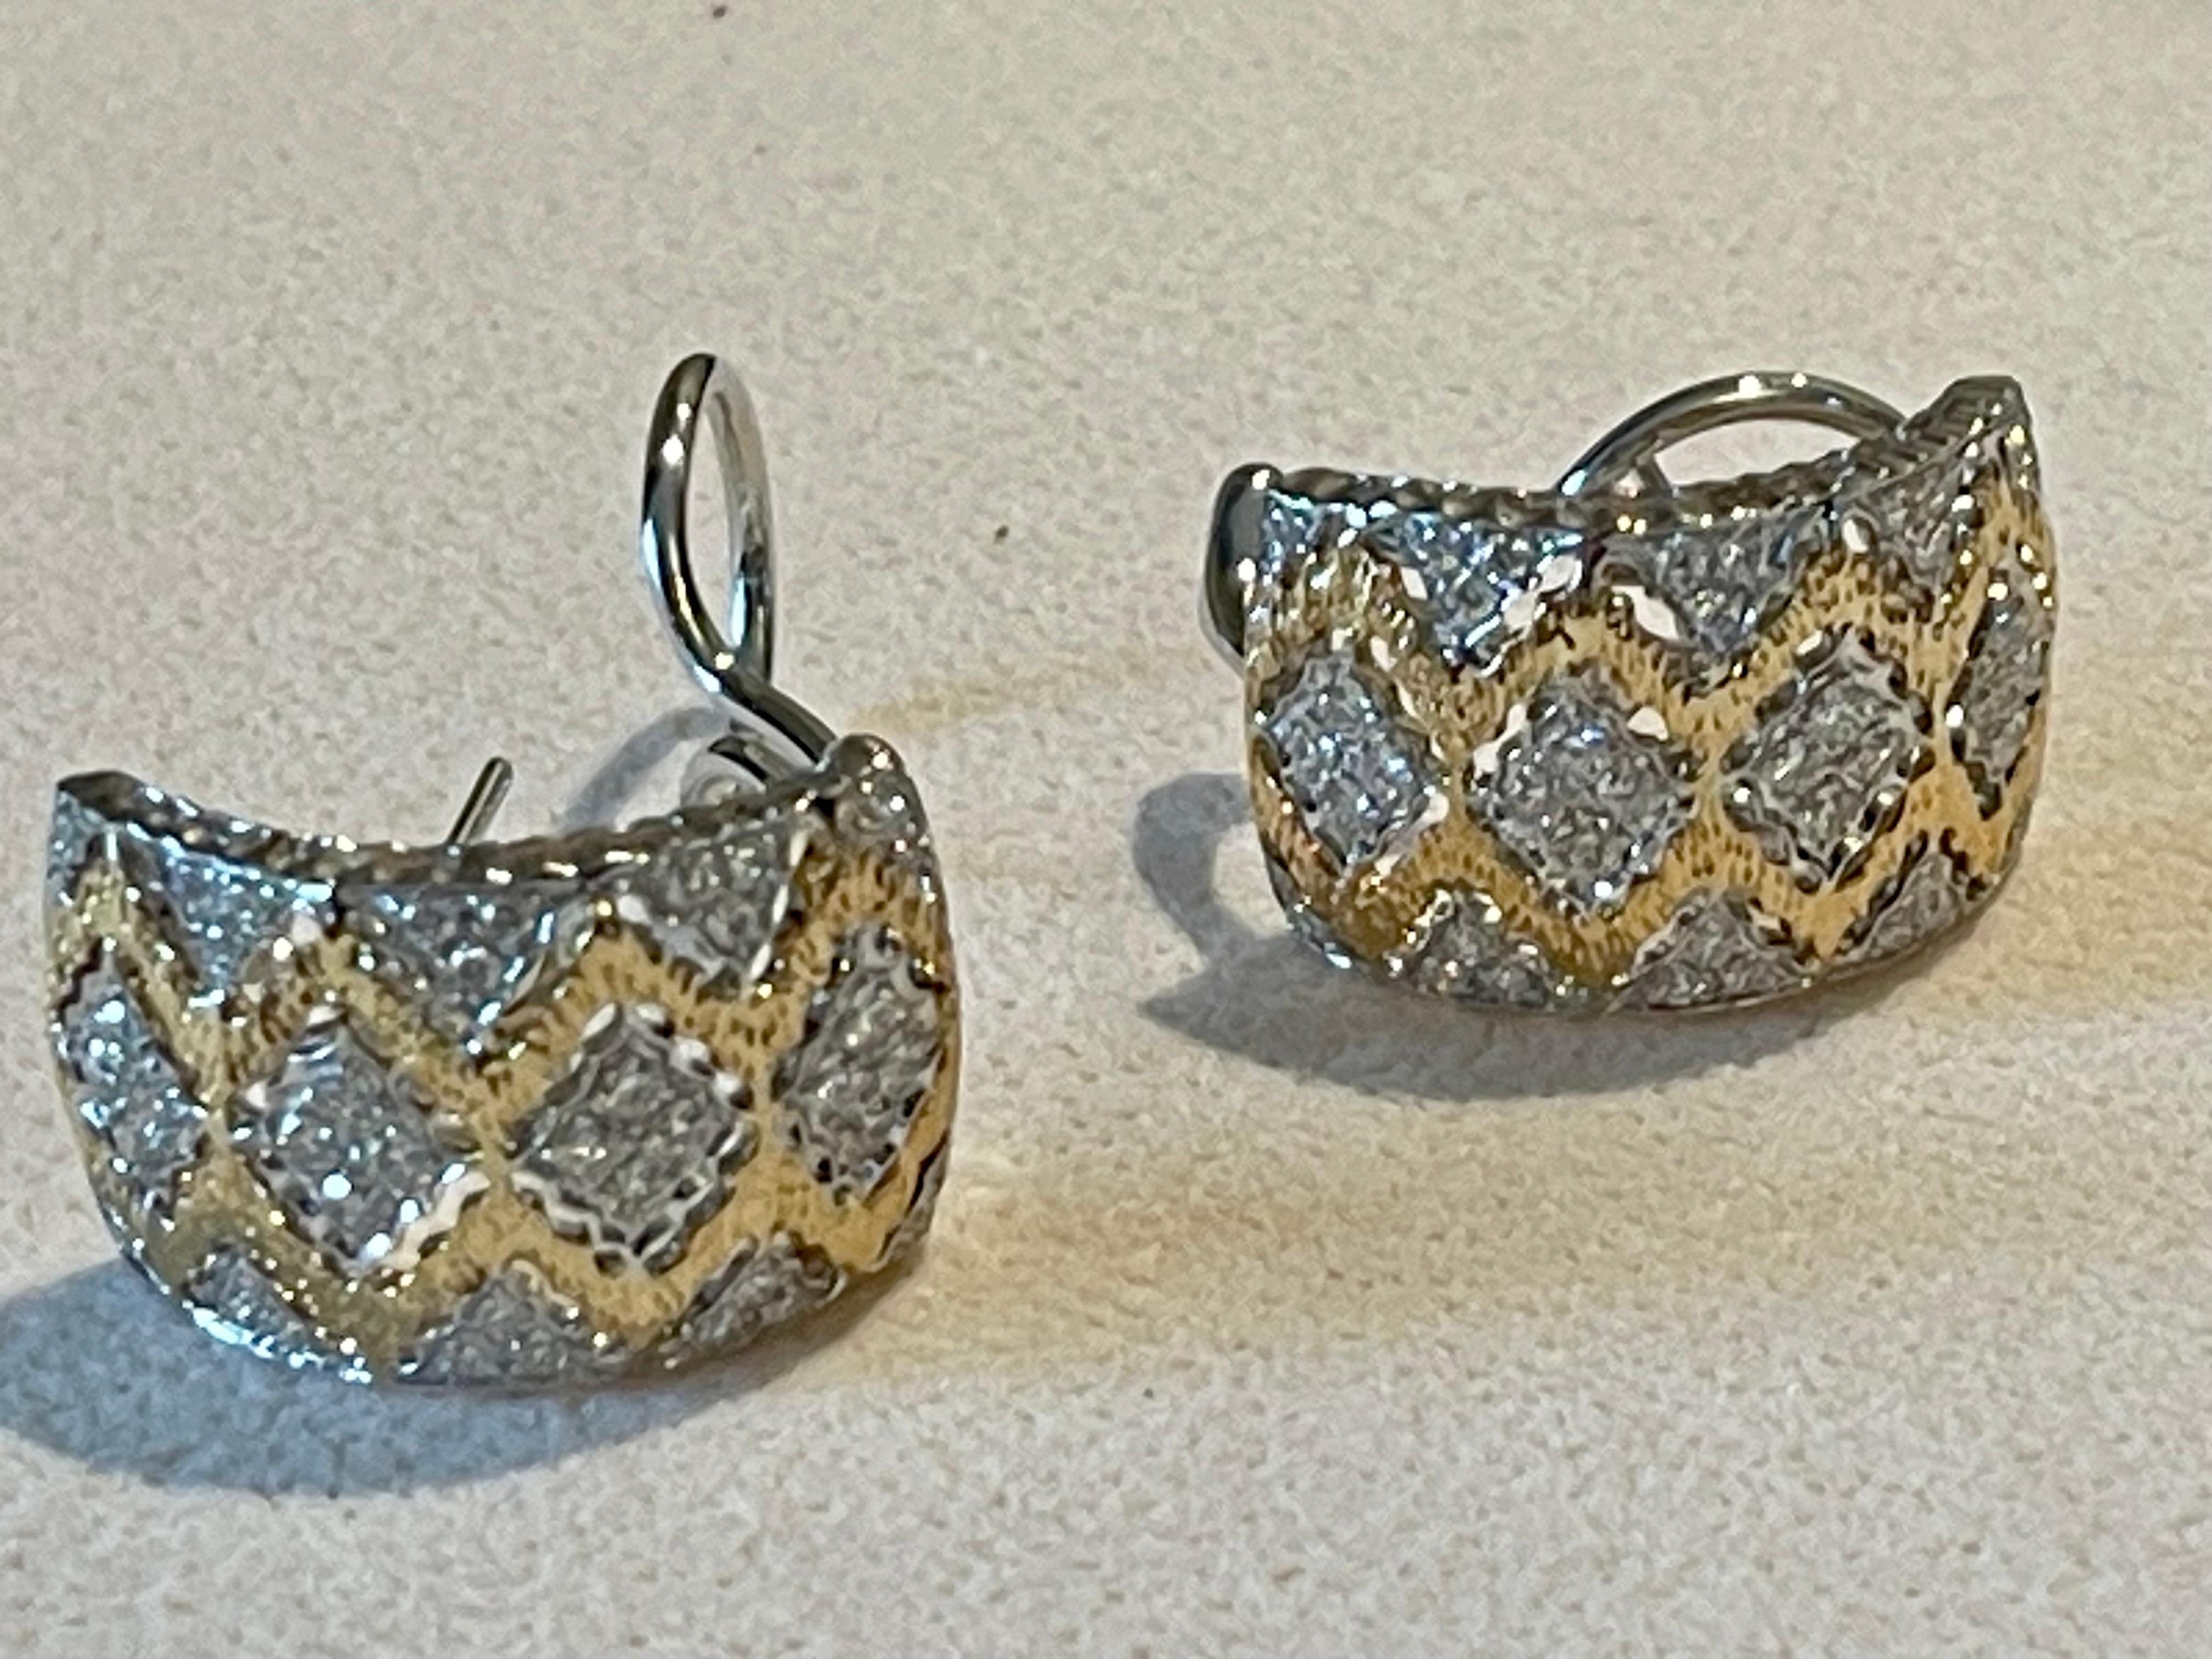 Ein Paar zweifarbiges 18 K. Gelbgold und 18 K. Weißgold  Huggies-Ohrringe mit schönem durchbrochenem Filigran zwischen den diamantförmigen Goldteilen.
In der Mitte jedes Abschnitts befindet sich ein Diamant im Brillantschliff. Das Gelbgold an den